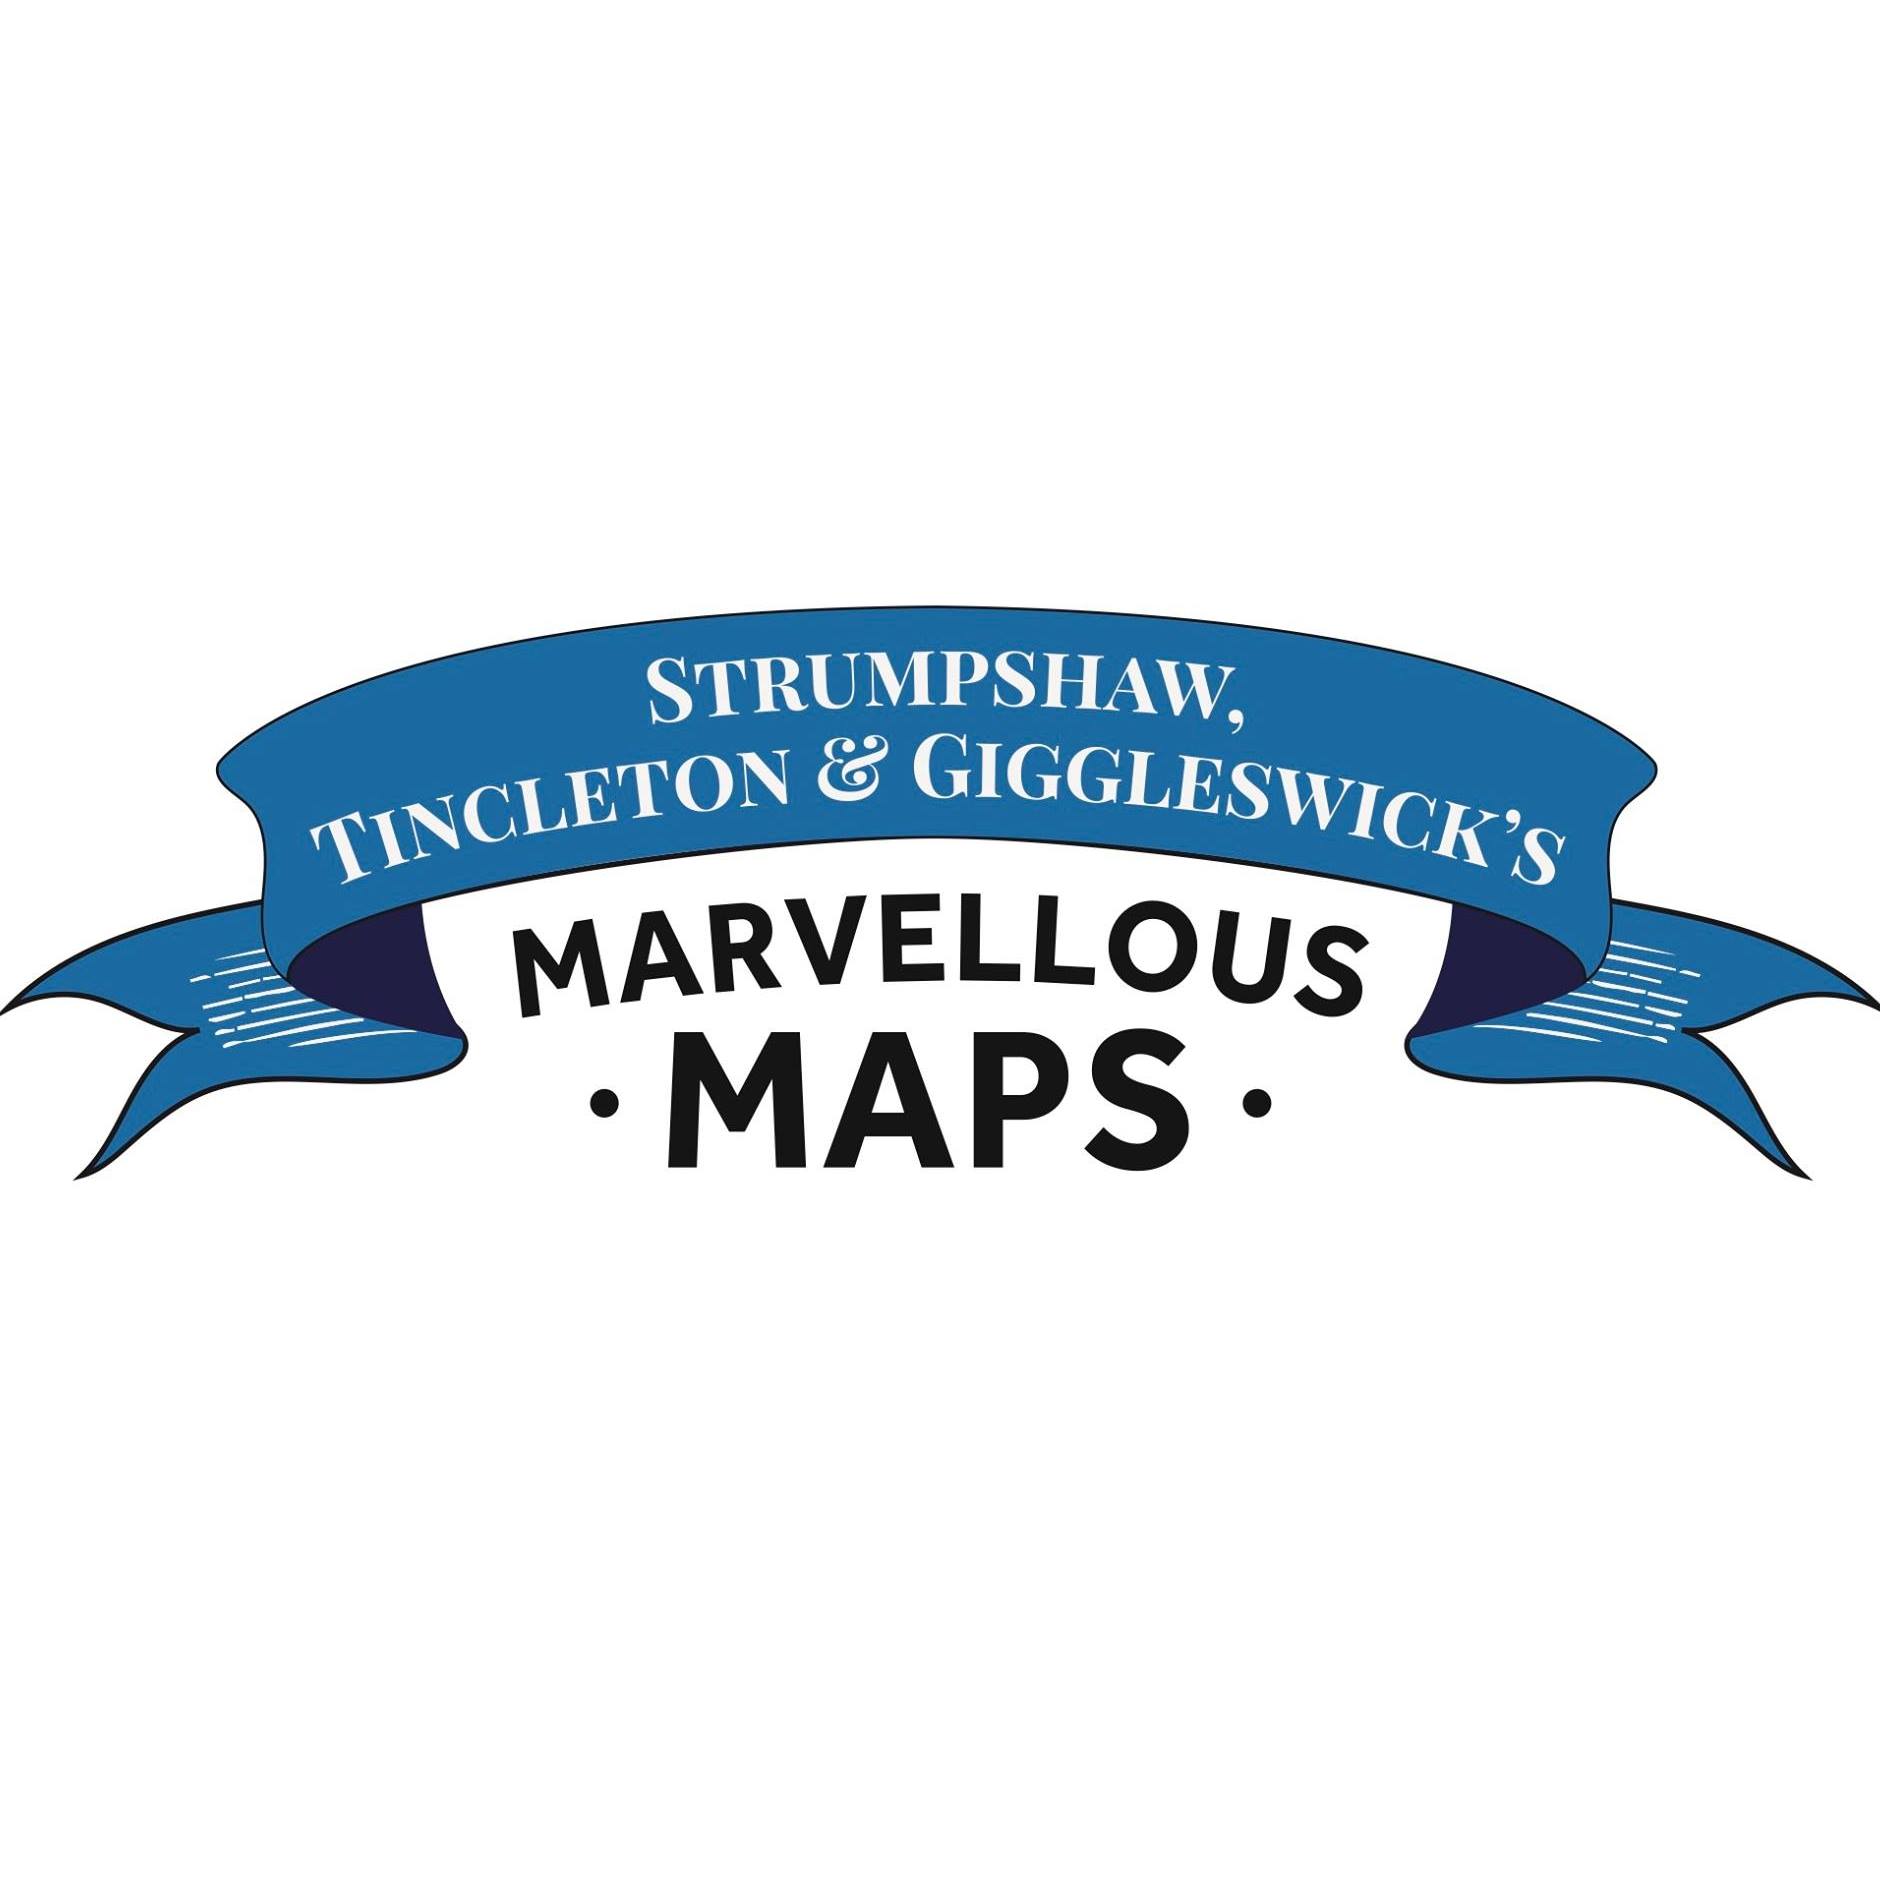 Coupon codes Marvellous Maps